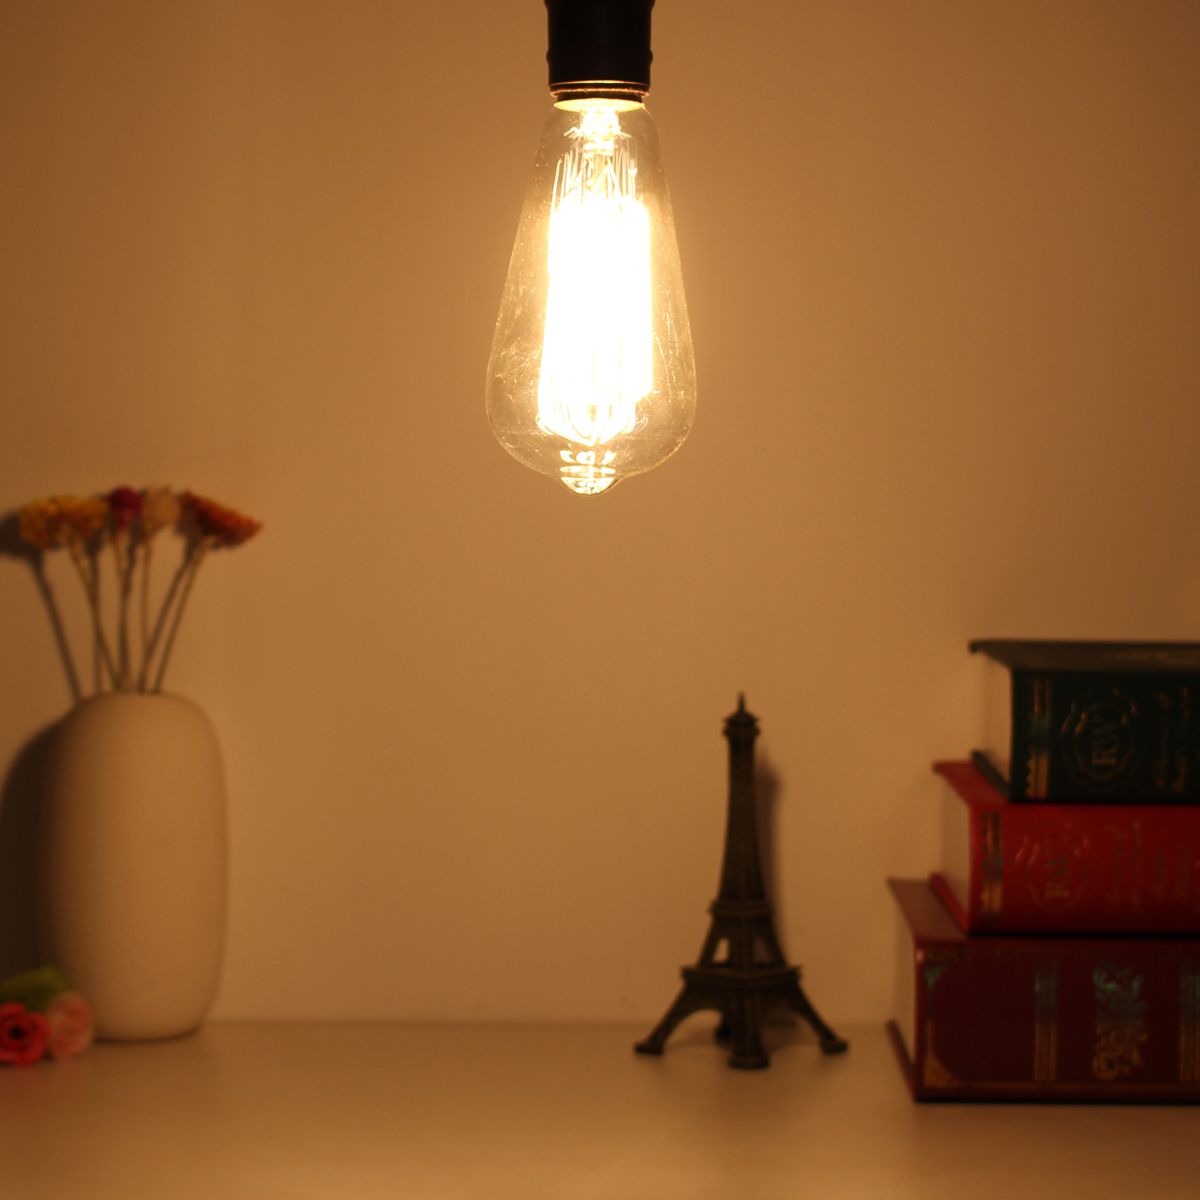 4PCS-Kingso-AC110V-E27-60W-ST64-A19-Edison-Vintage-Incandescent-Light-Bulb-for-Indoor-Home-1636094